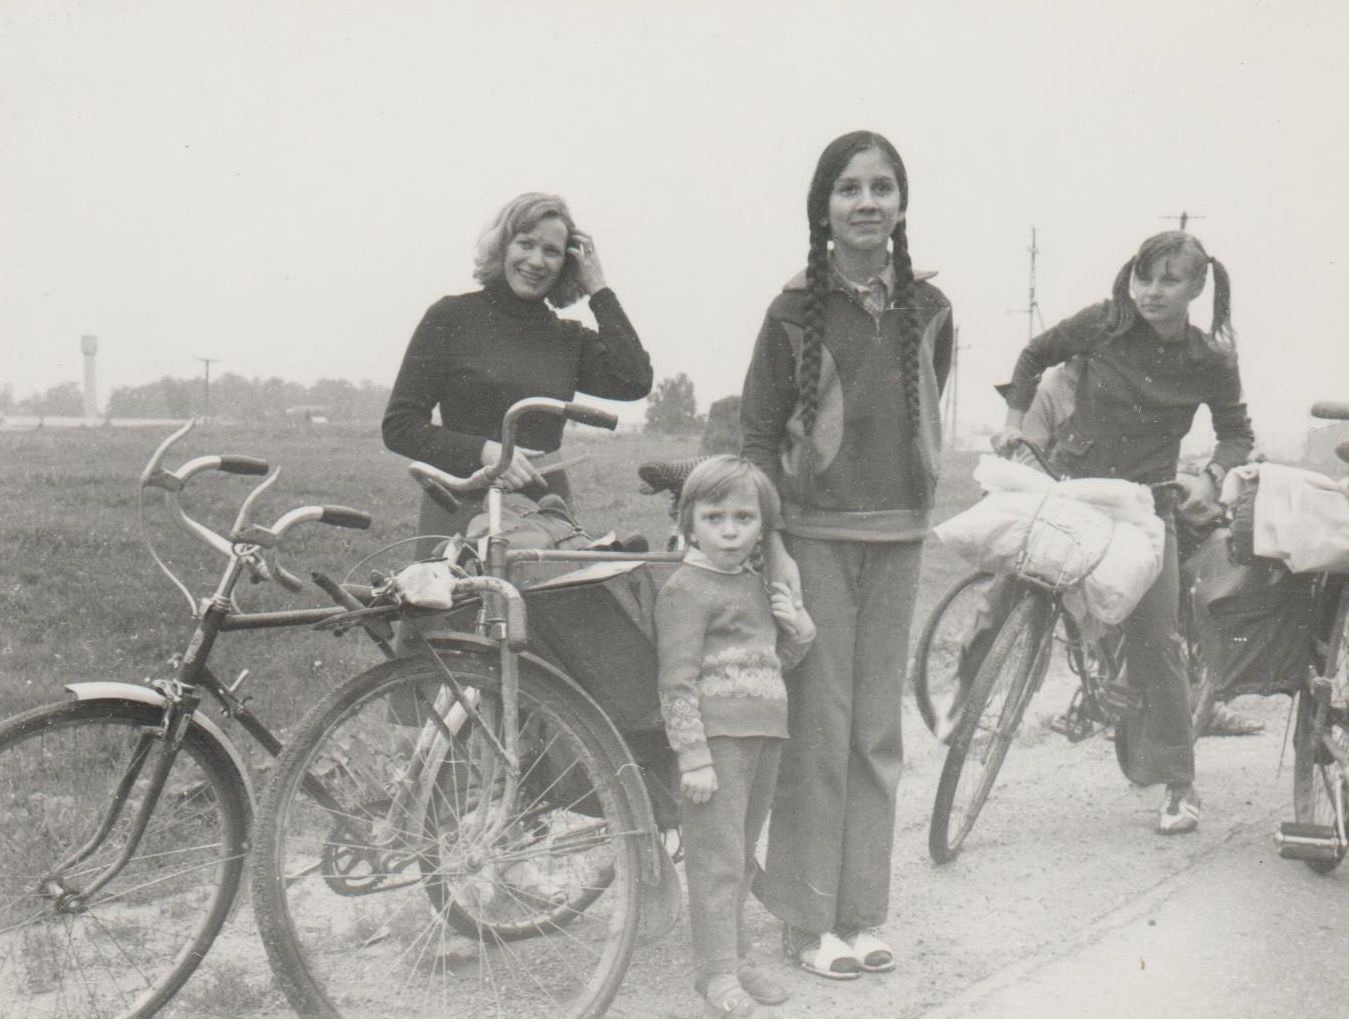 Žygio „Aplink Lietuvą“ dalyvius aplankė Birutė, Ugnė ir Milda. Ant dviračio – Danguolė Stumbrienė. 1980 m. liepa.